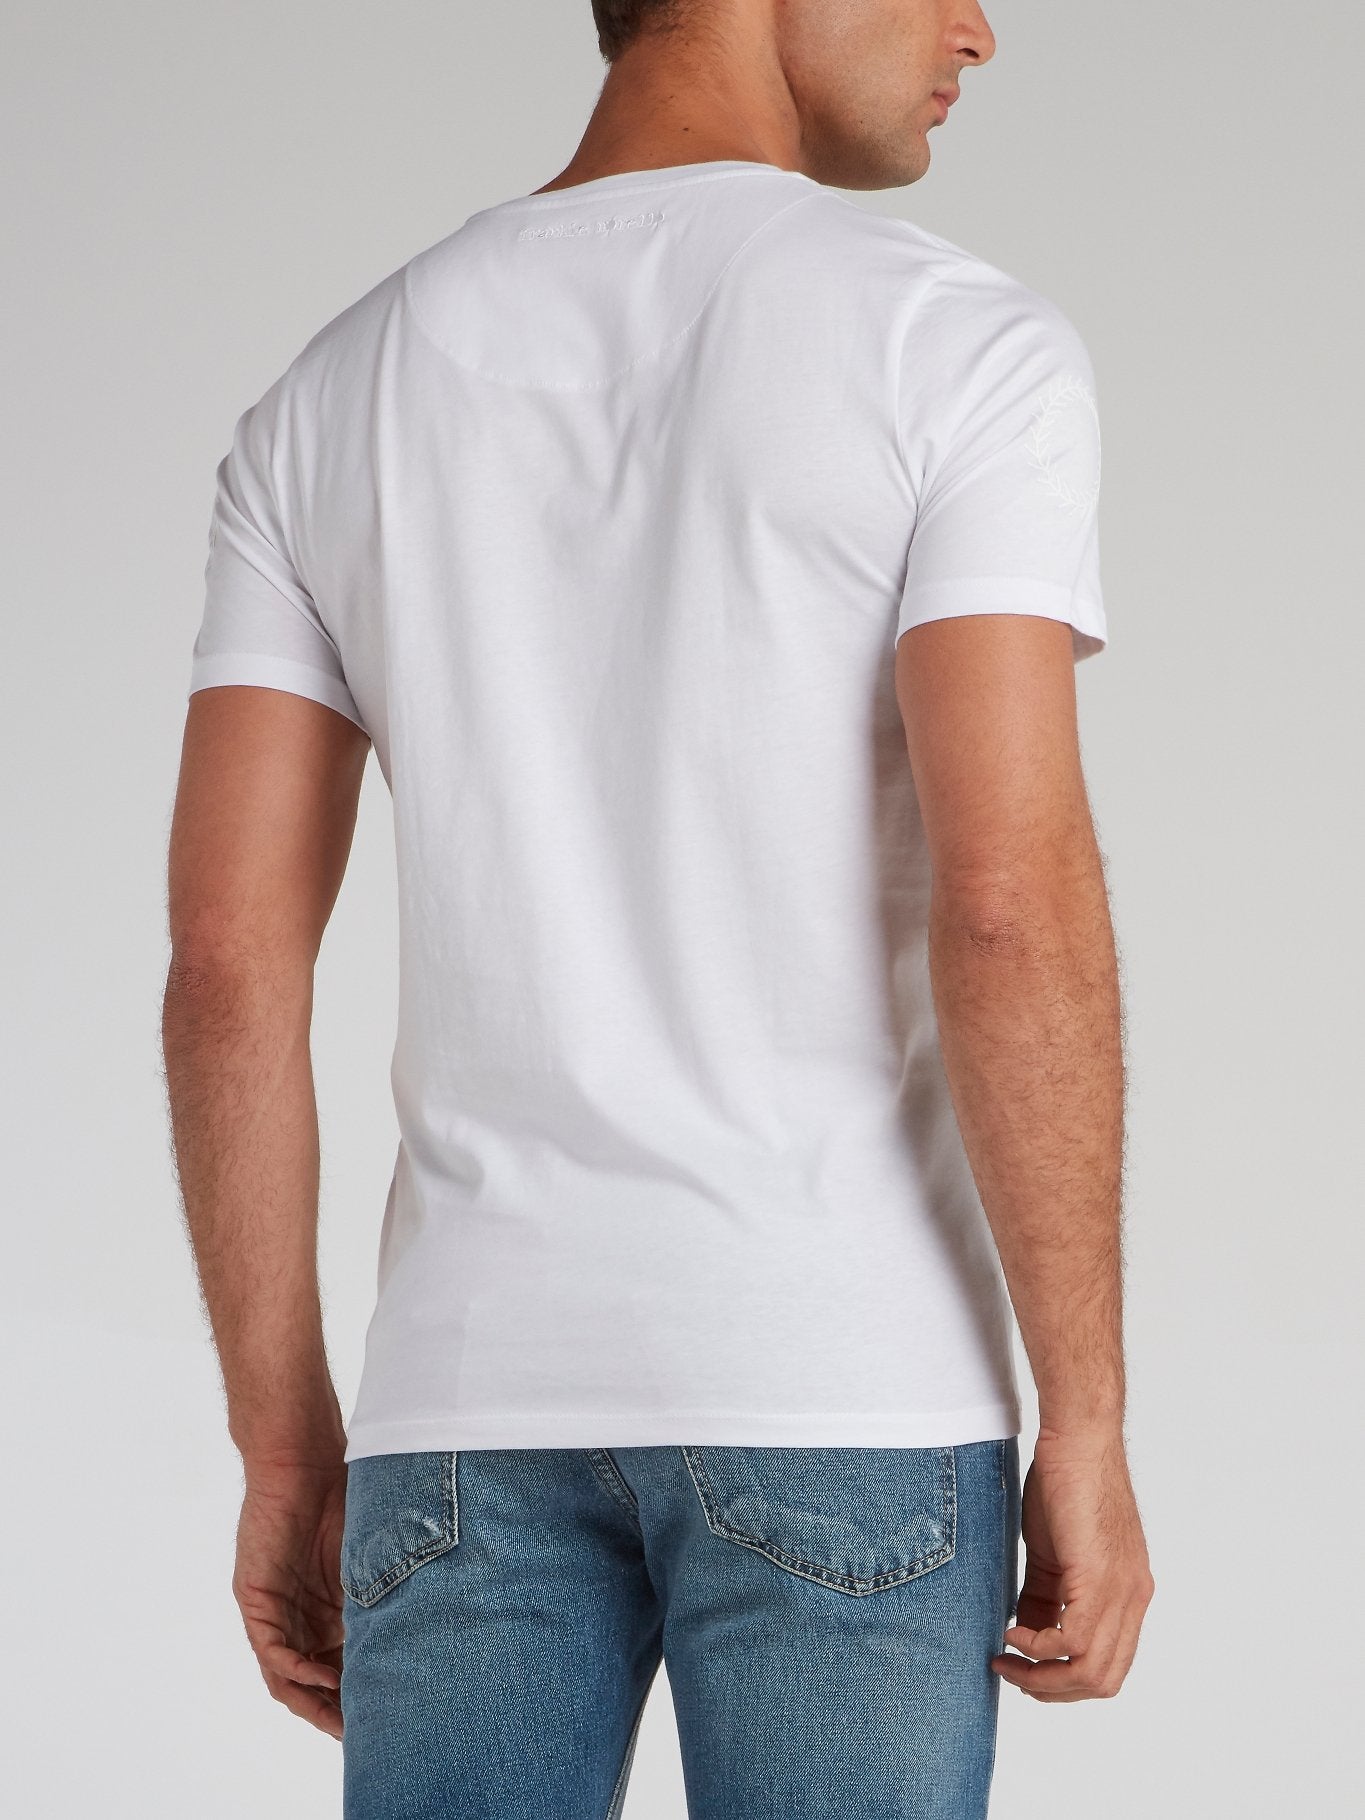 Guillard White Printed T-Shirt